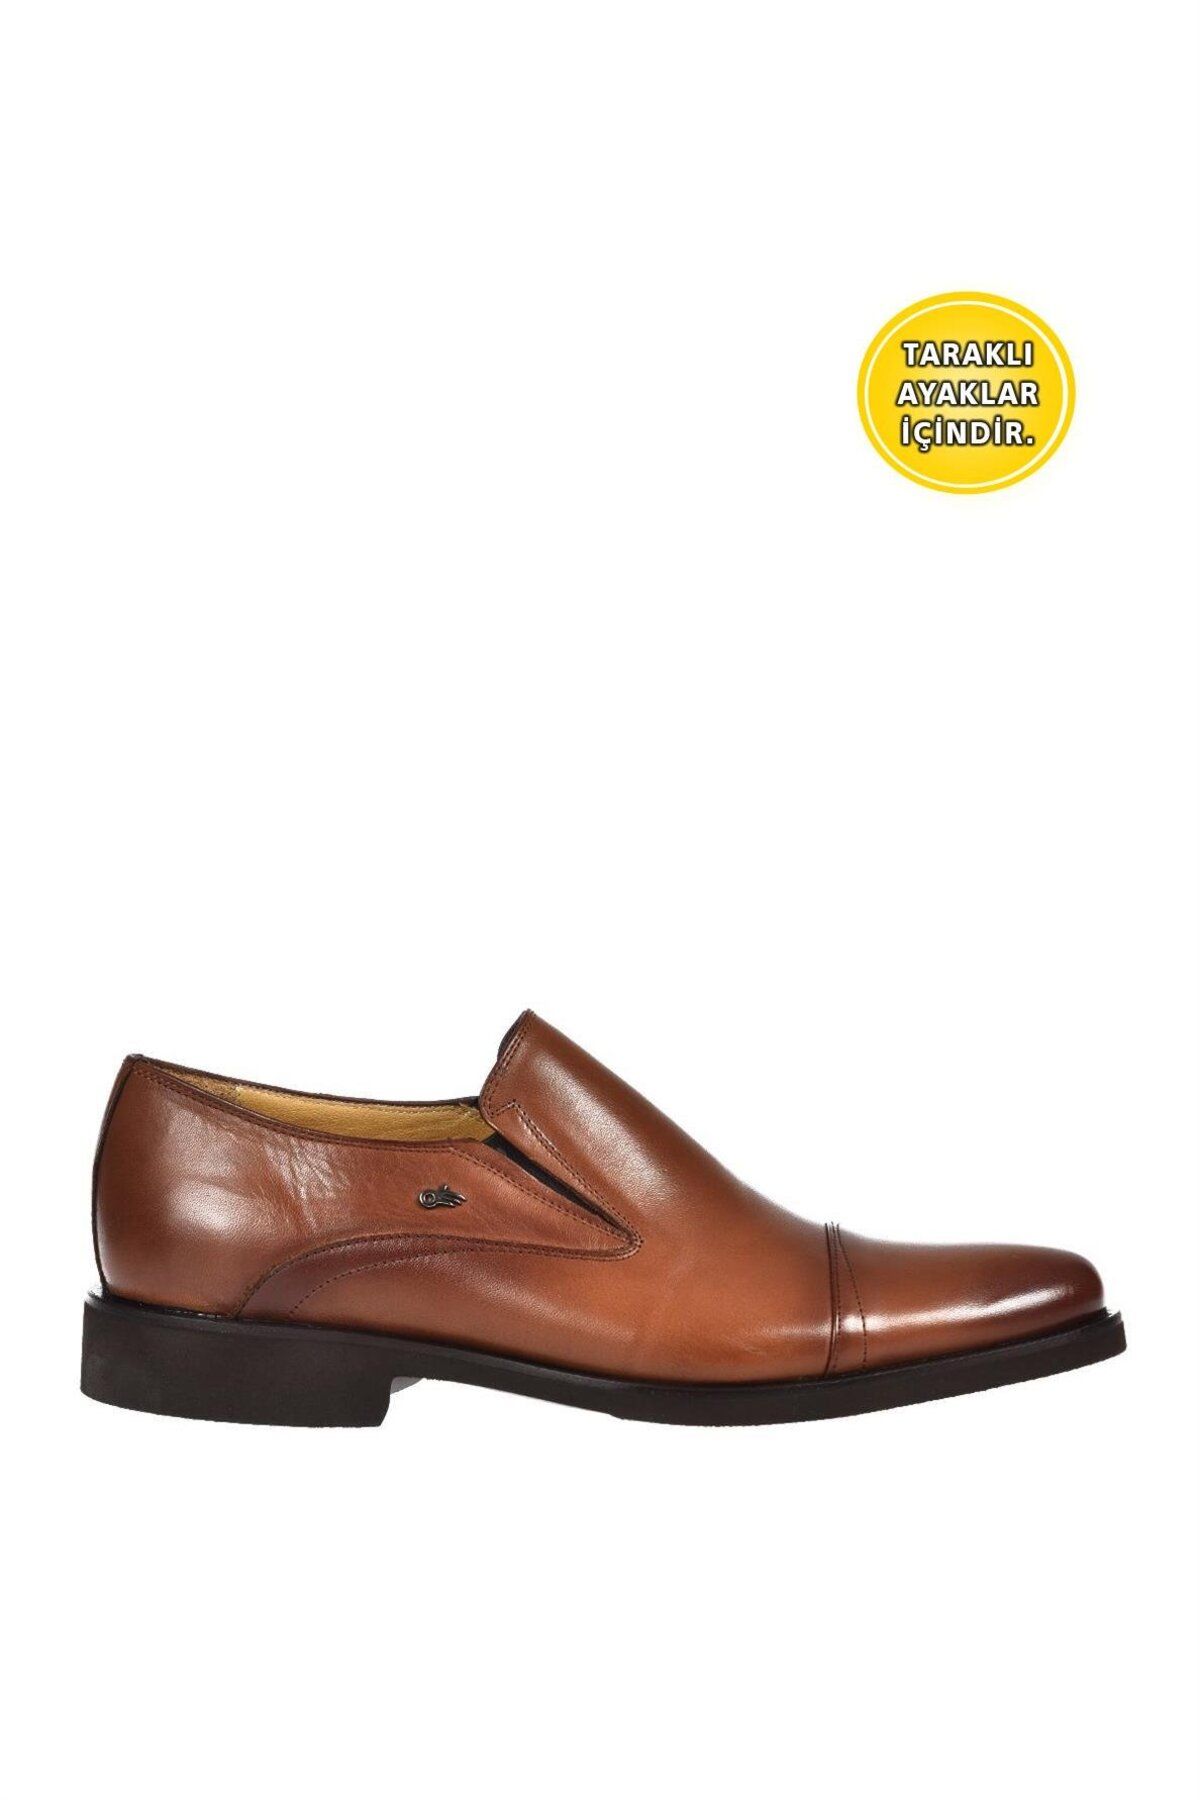 Dr.Flexer 21403 Hakiki Deri Erkek Comfort Büyük Numaralı Ayakkabı Taba